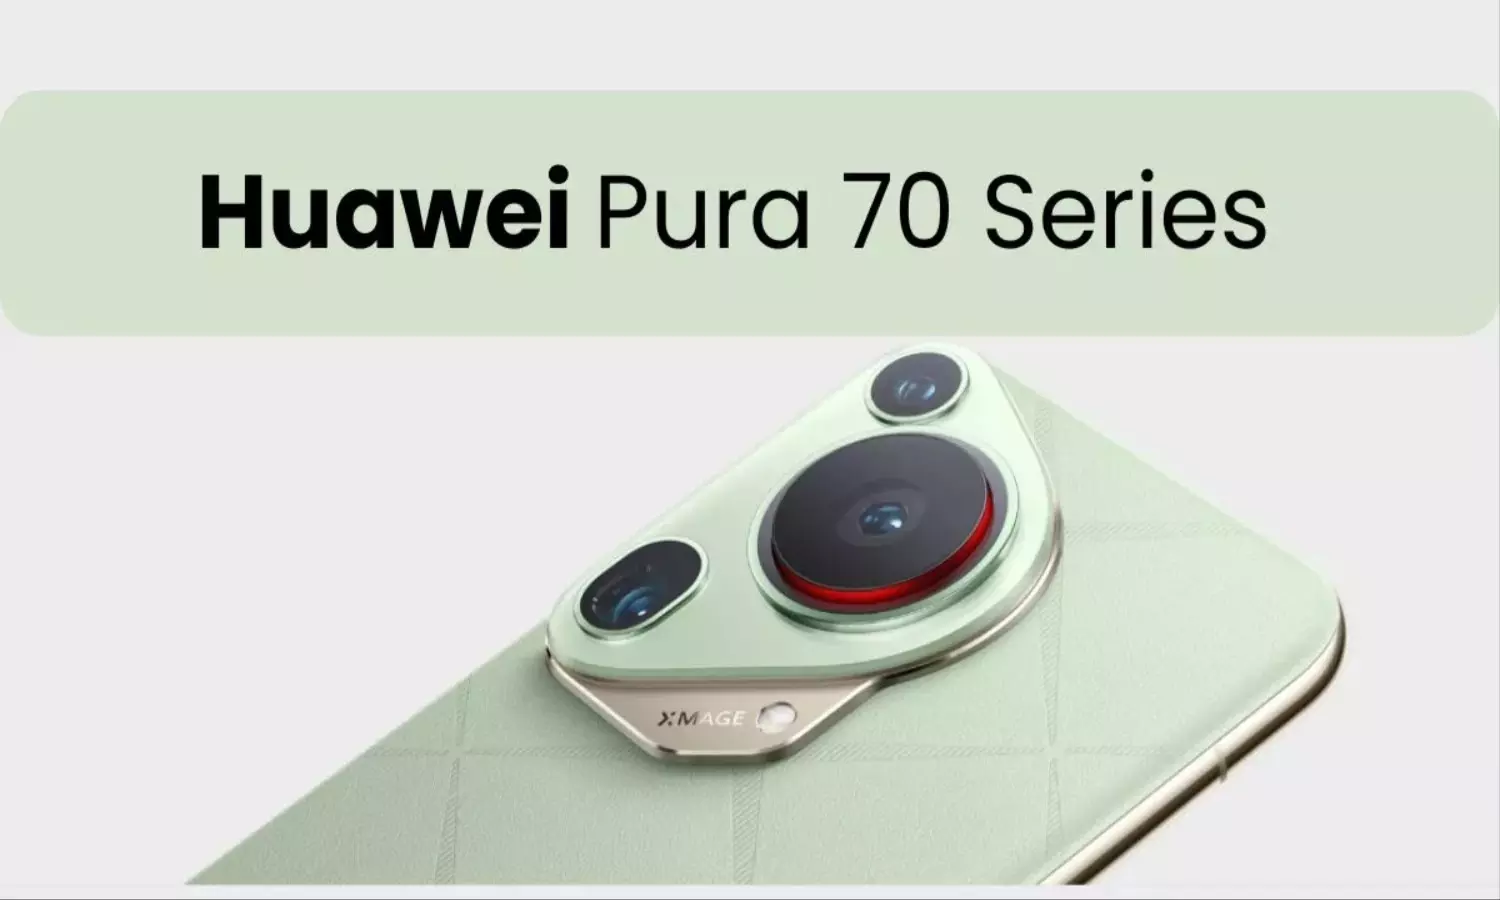 लॉन्च होते ही छा गई Huawei Pura 70 Series, जानें कैसा है Review